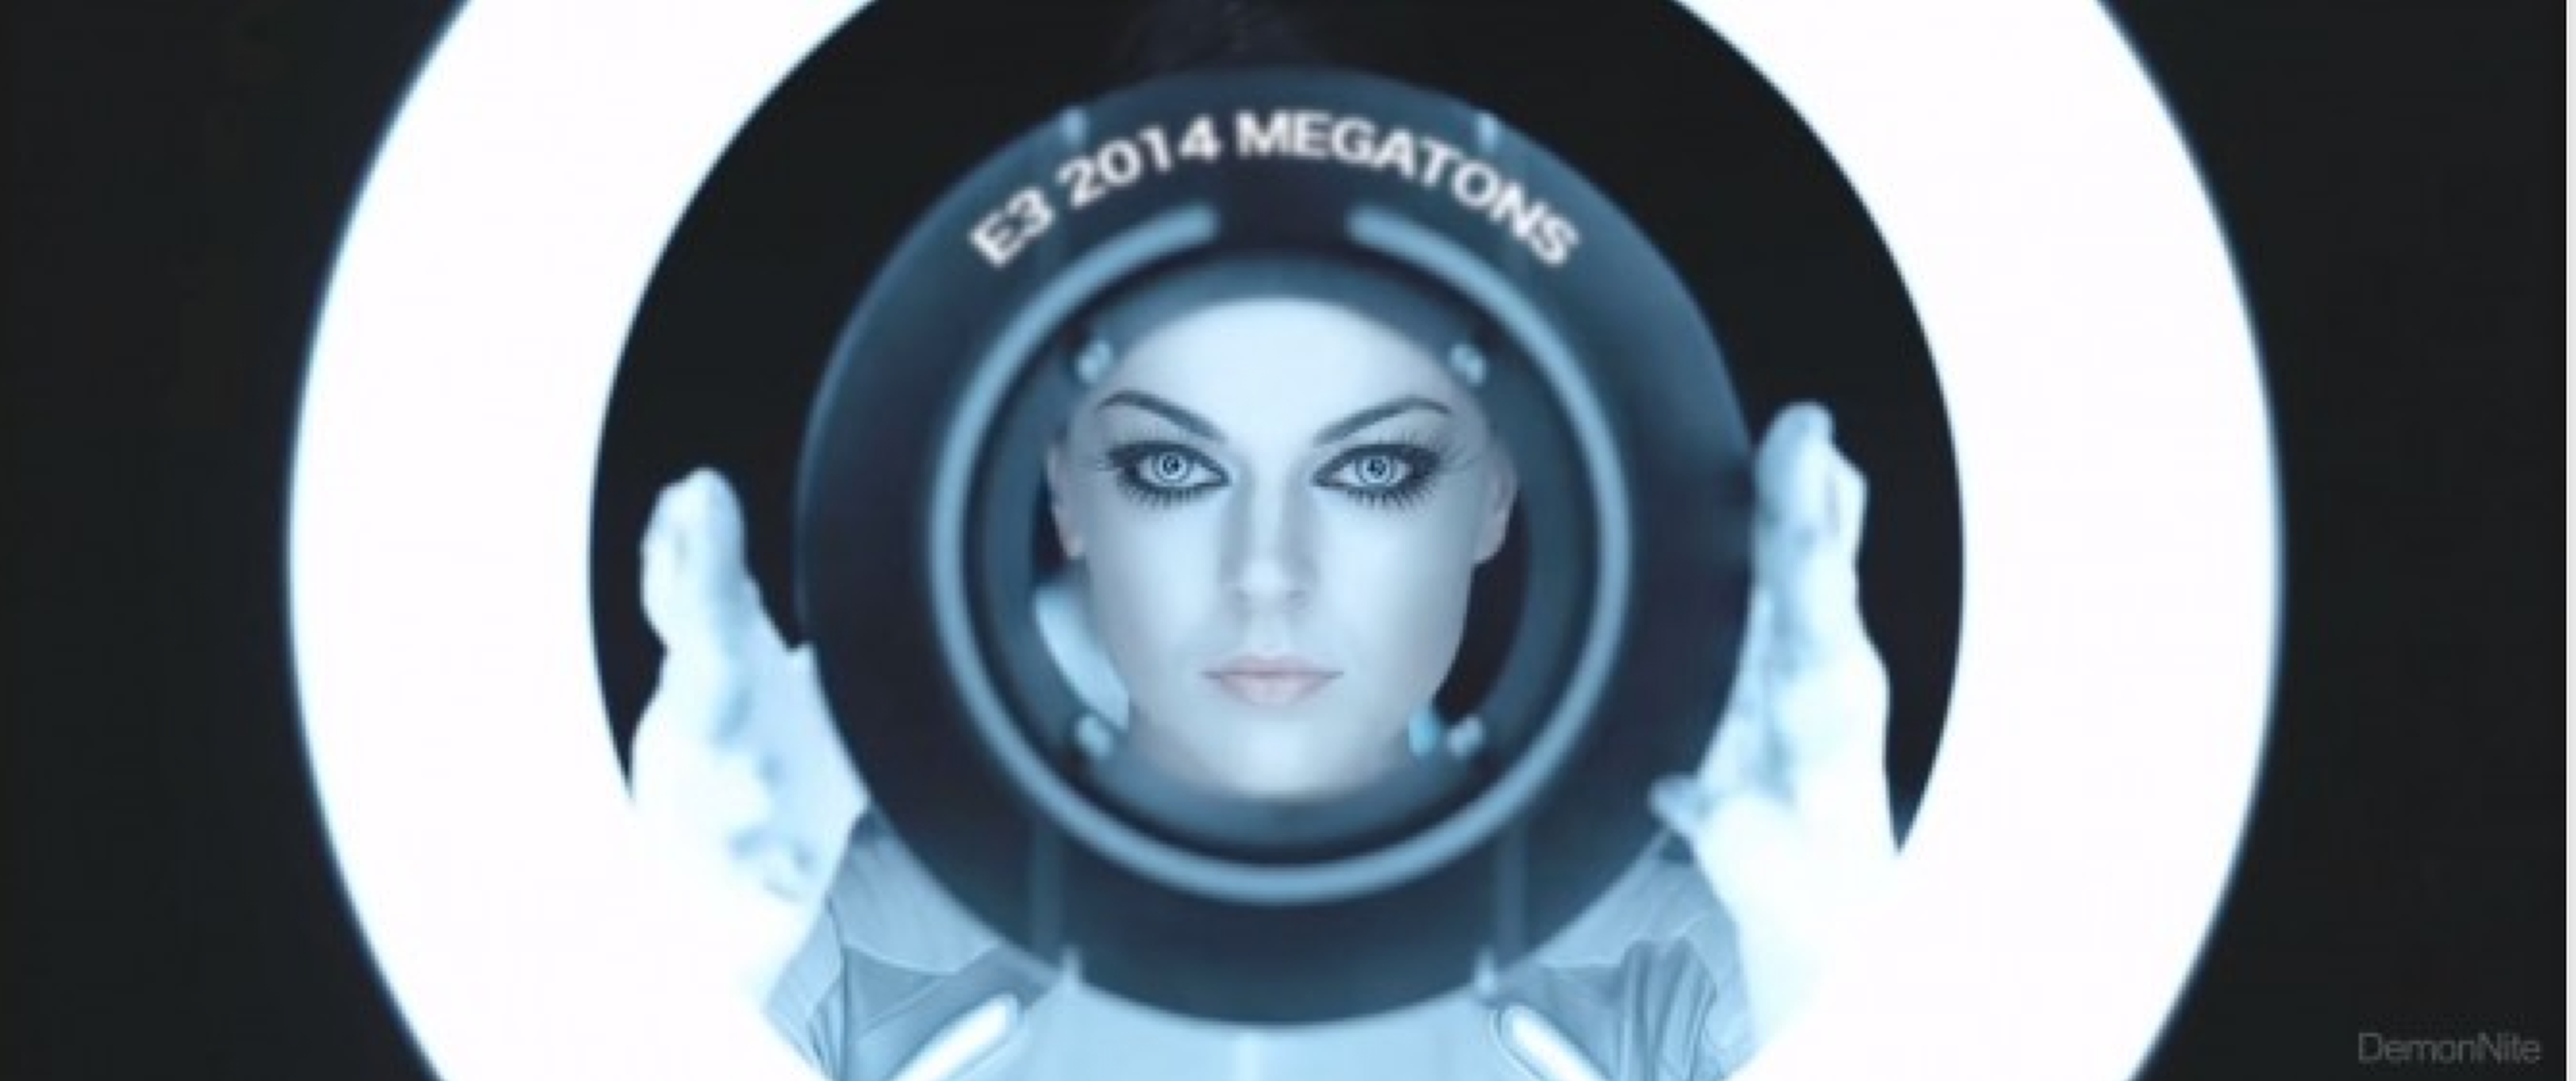 E3 2014: Este puede ser el vídeo de presentación de Sony